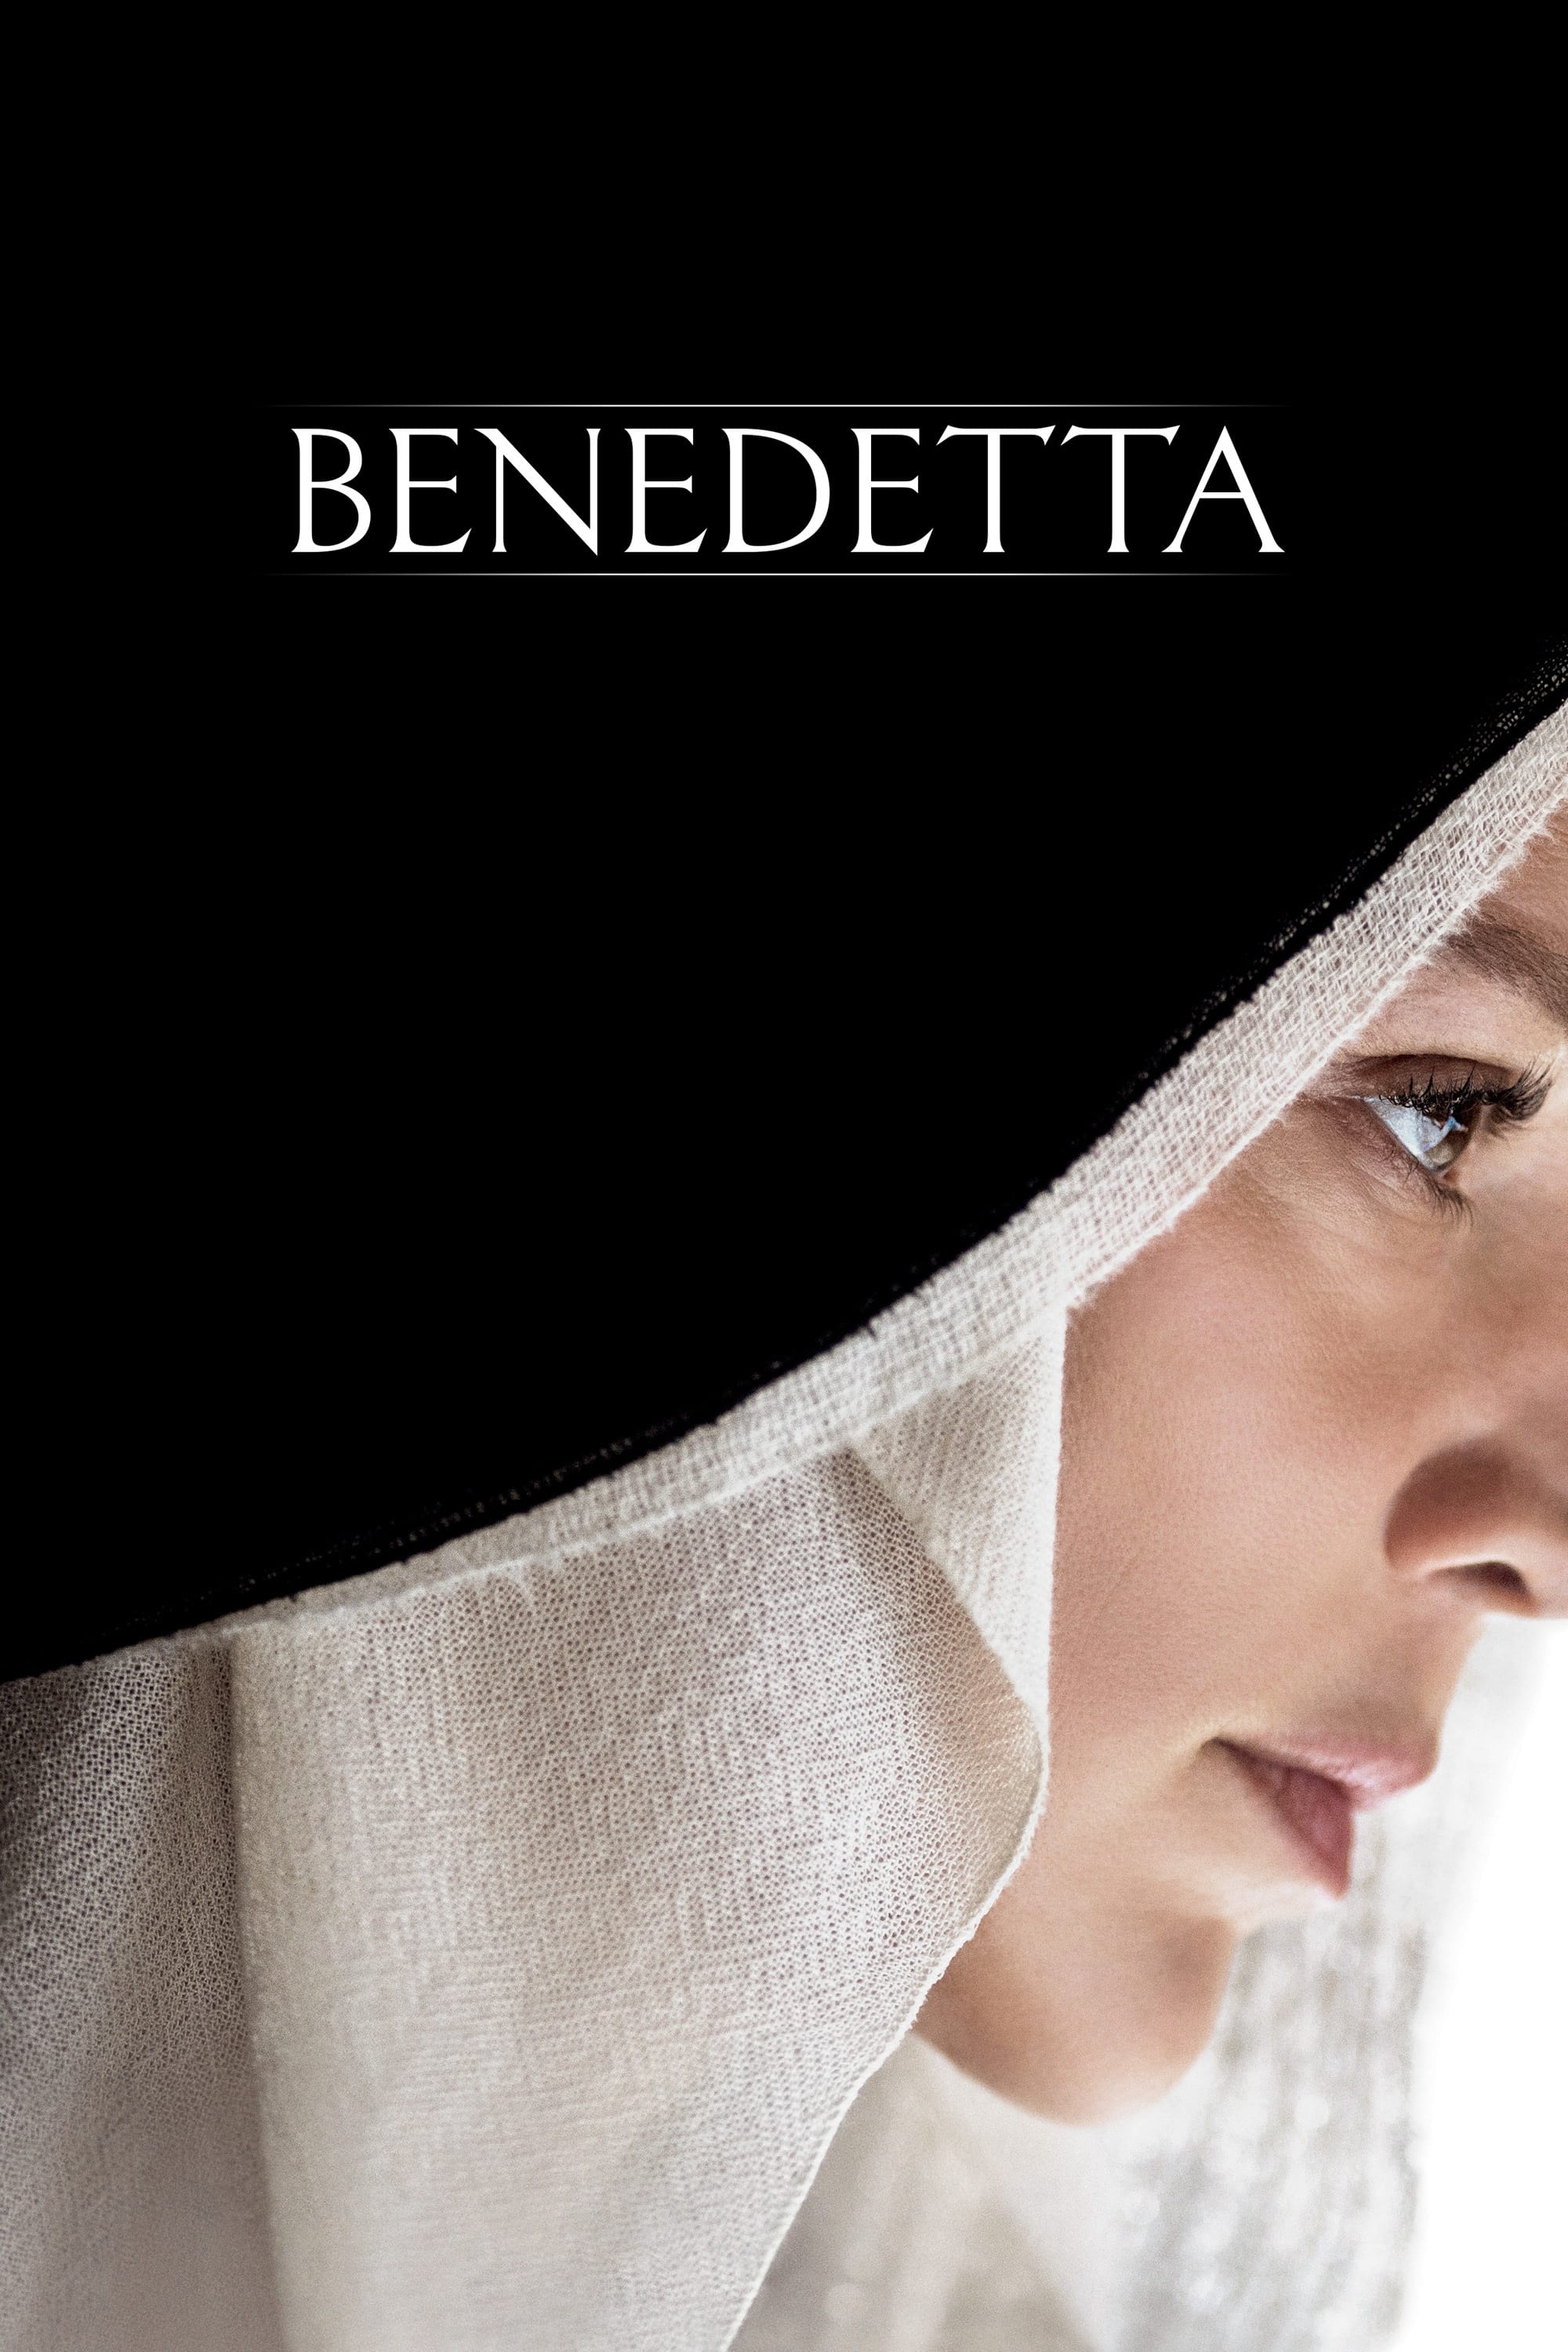 Câu Chuyện Về Benedetta - Benedetta (2021)